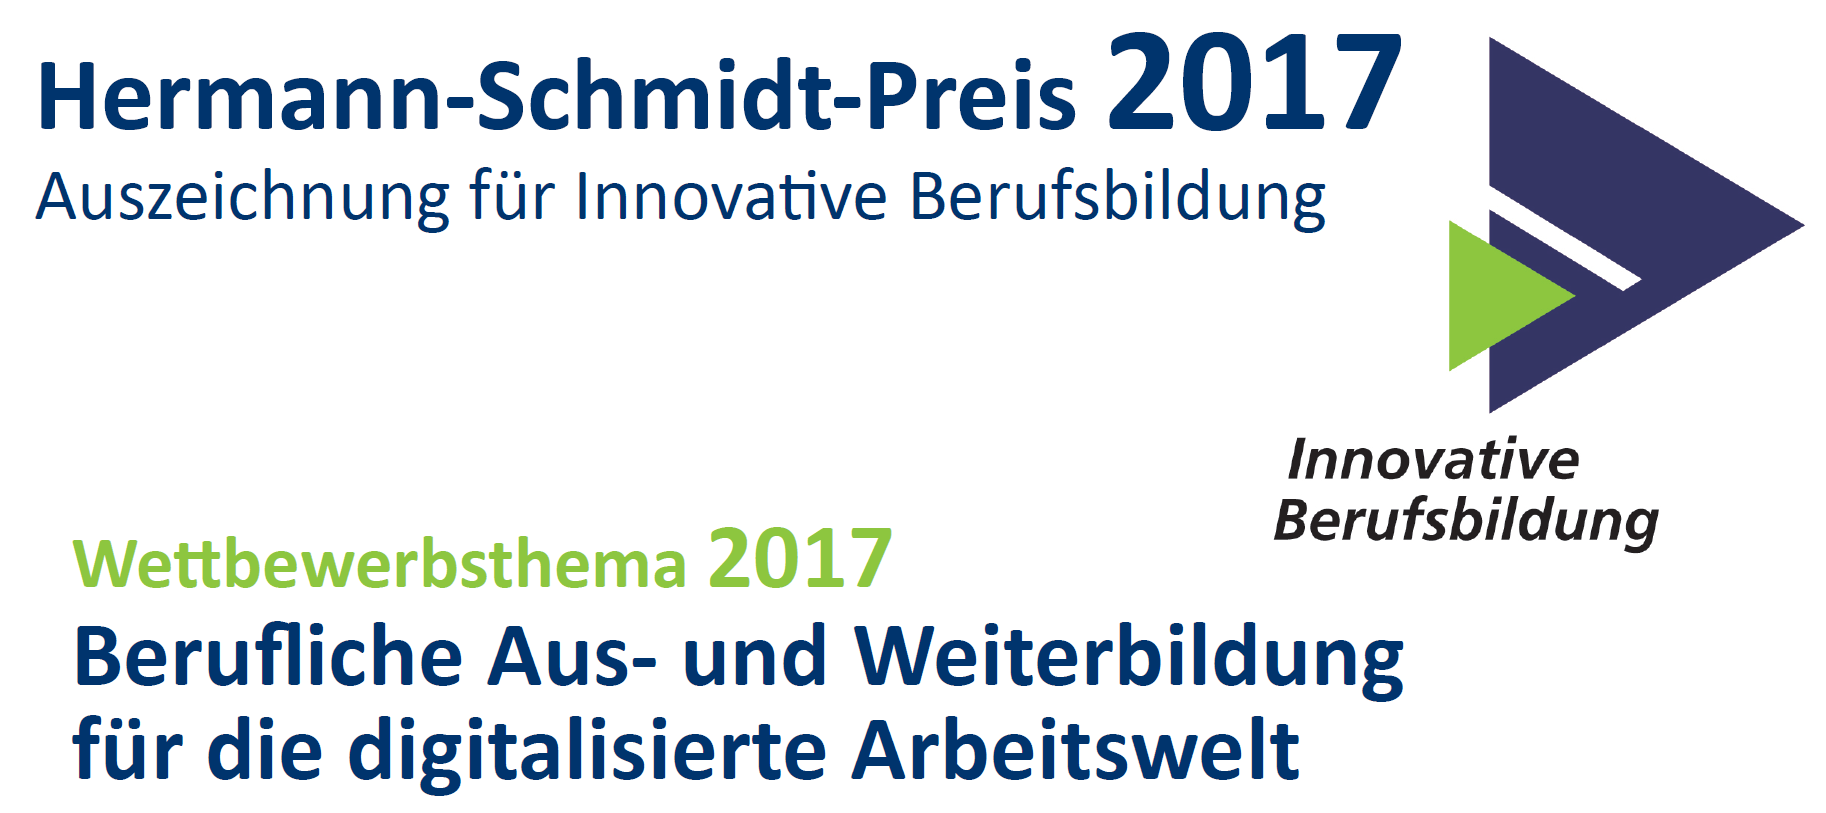 Preis für innovative Berufsbildung 2017